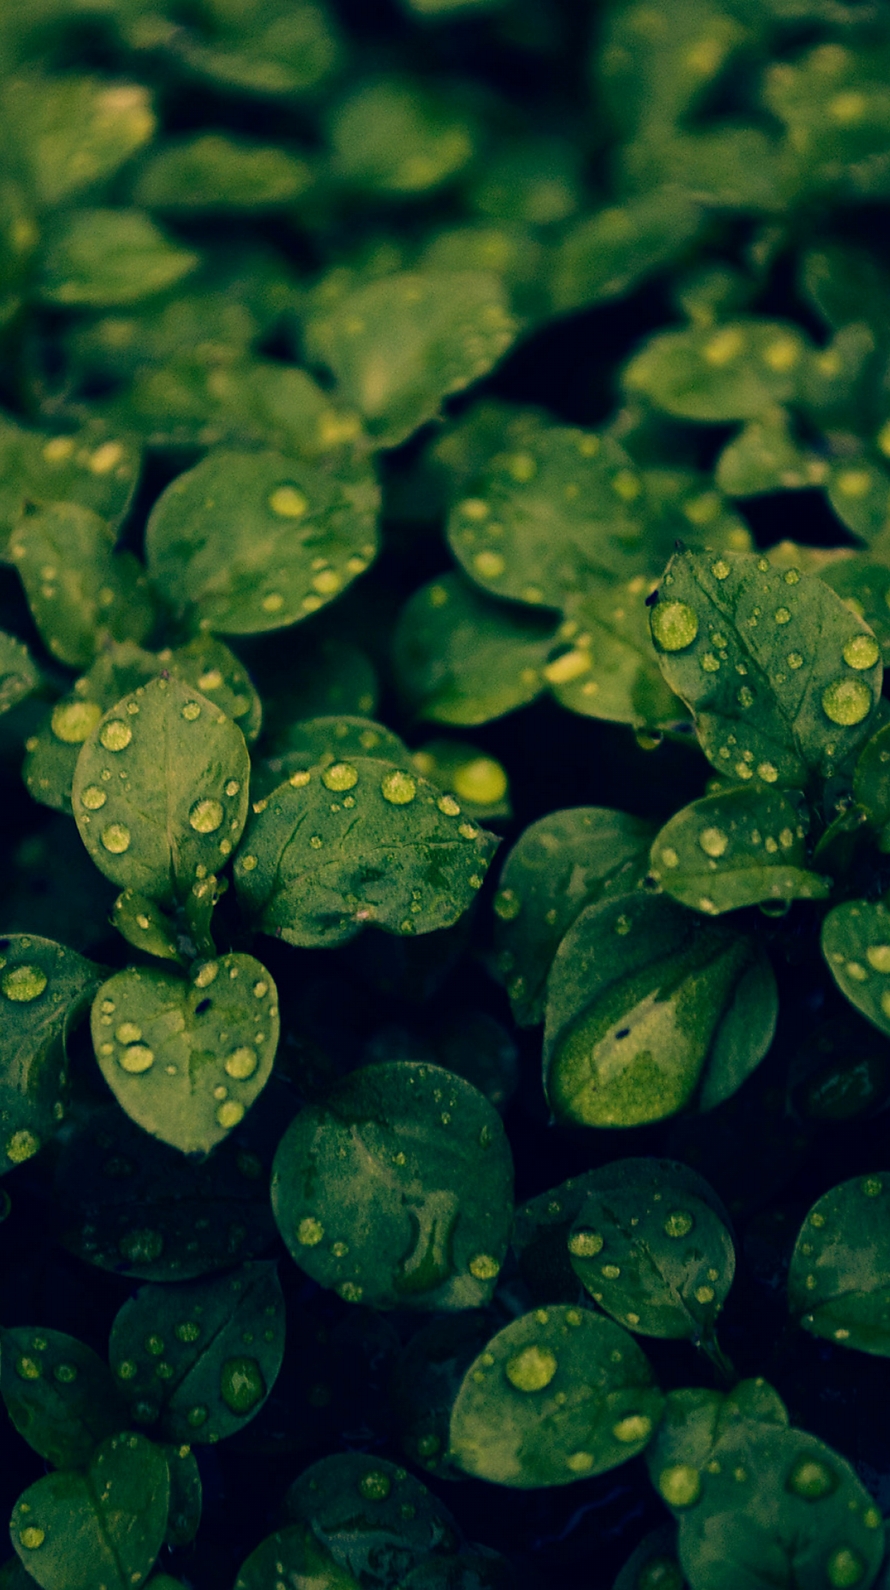 水滴のついた緑の葉 iPhone6壁紙